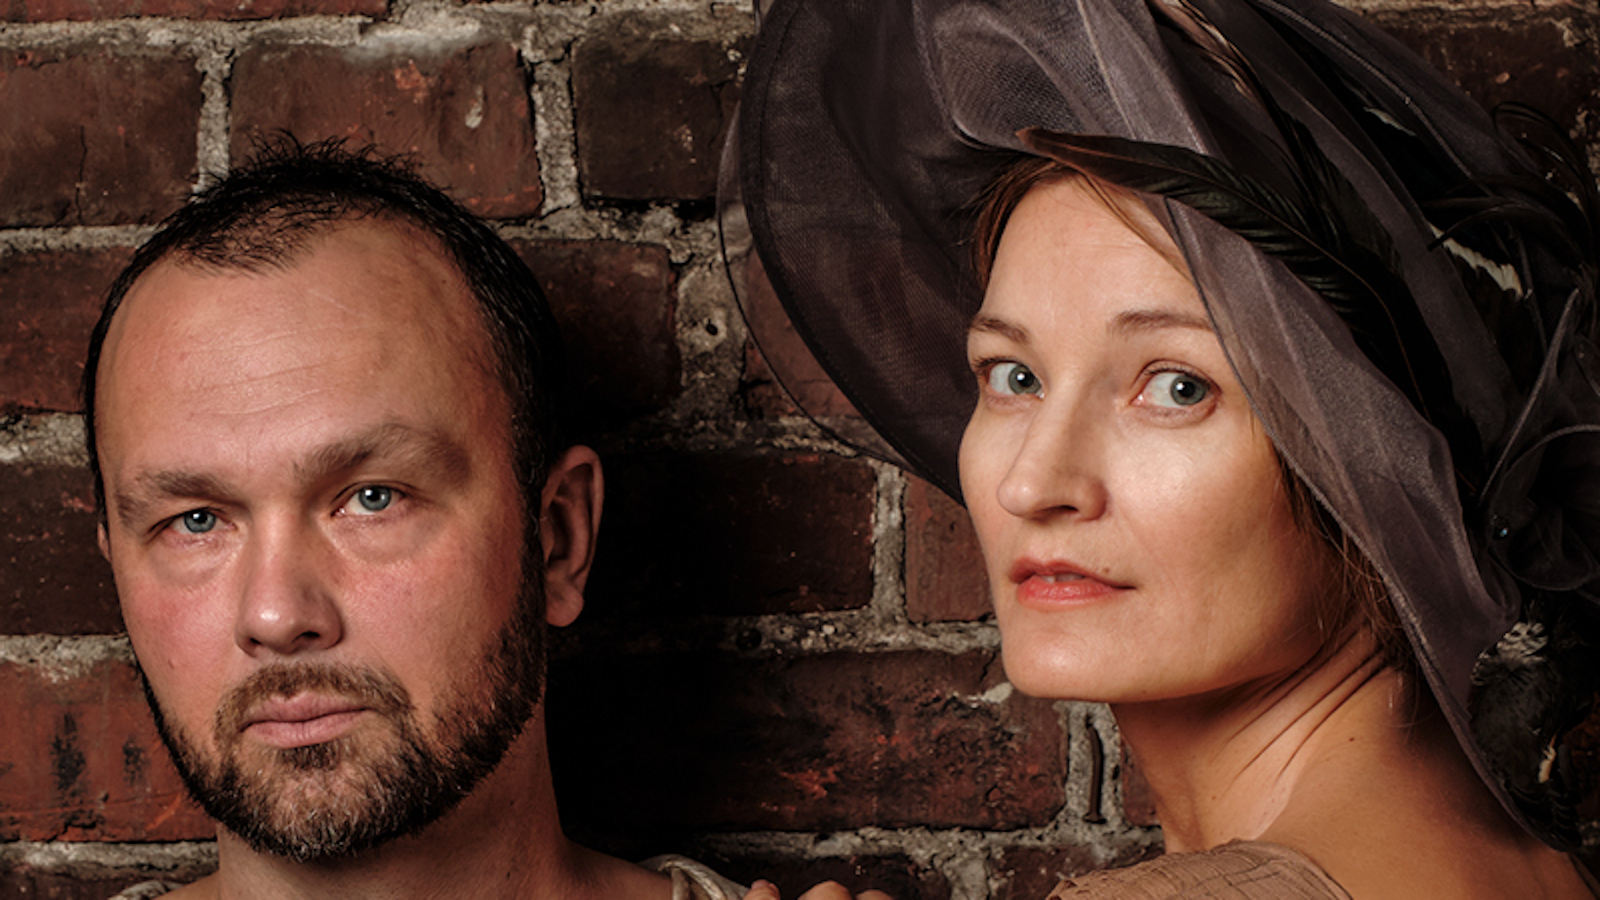 Kuvassa ovat Jari Virman ja Matleena Kuusniemi, jolla on iso musta hattu päässään. Kuva on kasvokuva molemmista.